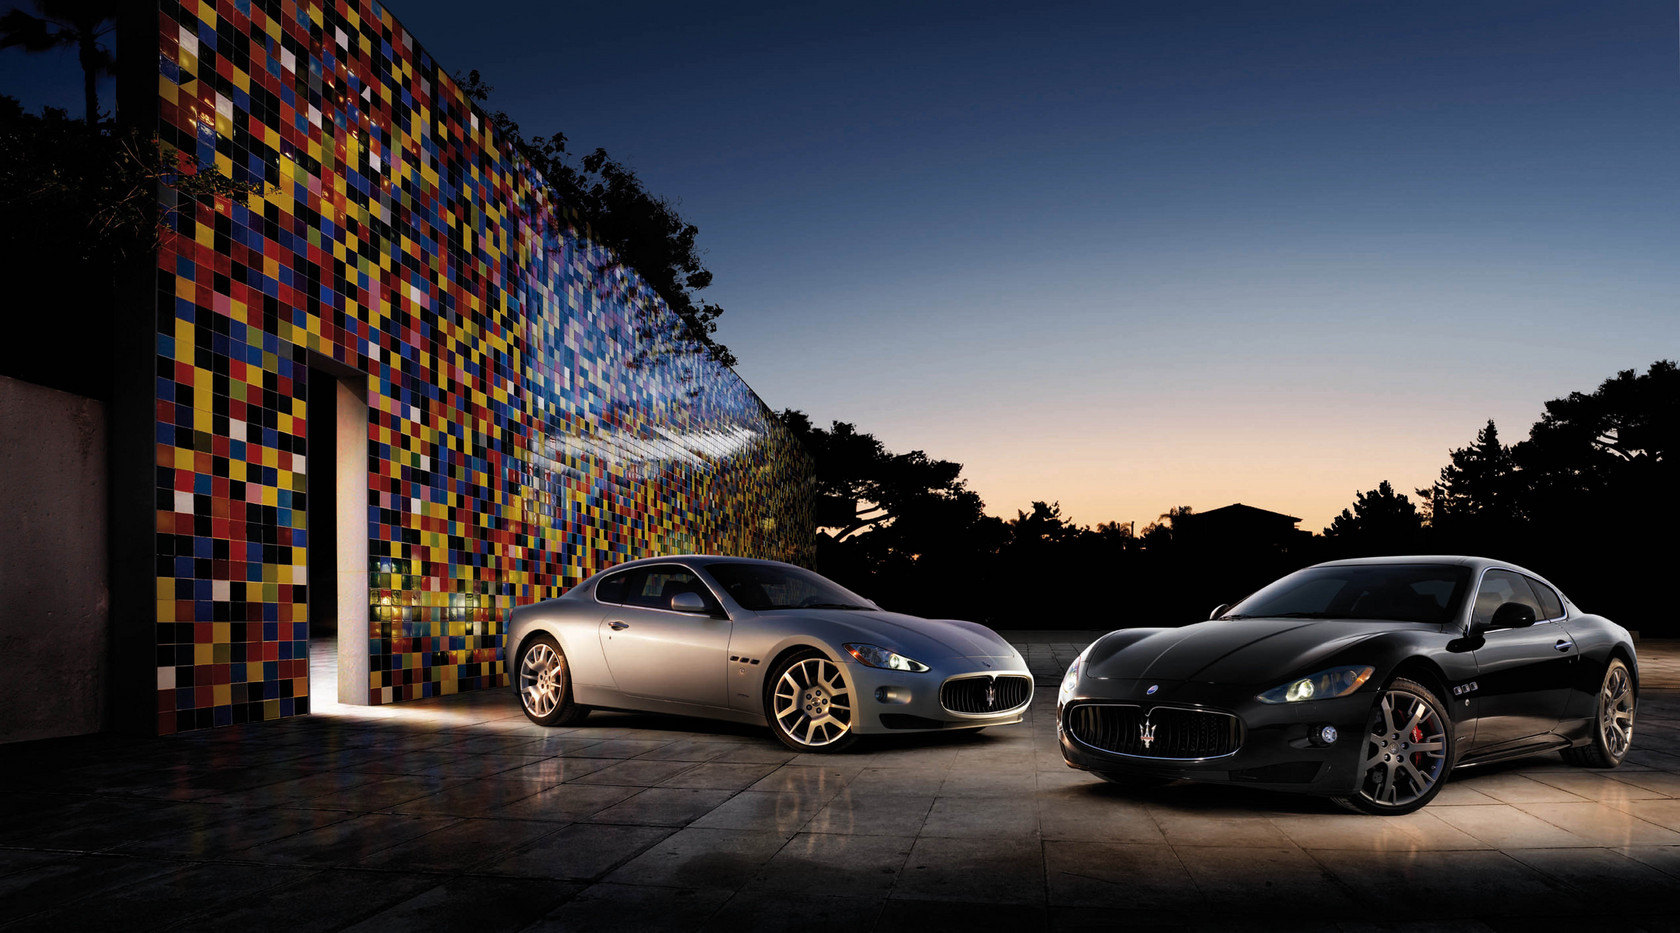 Maserati Granturismo Auto Wallpaper Groenlicht Be